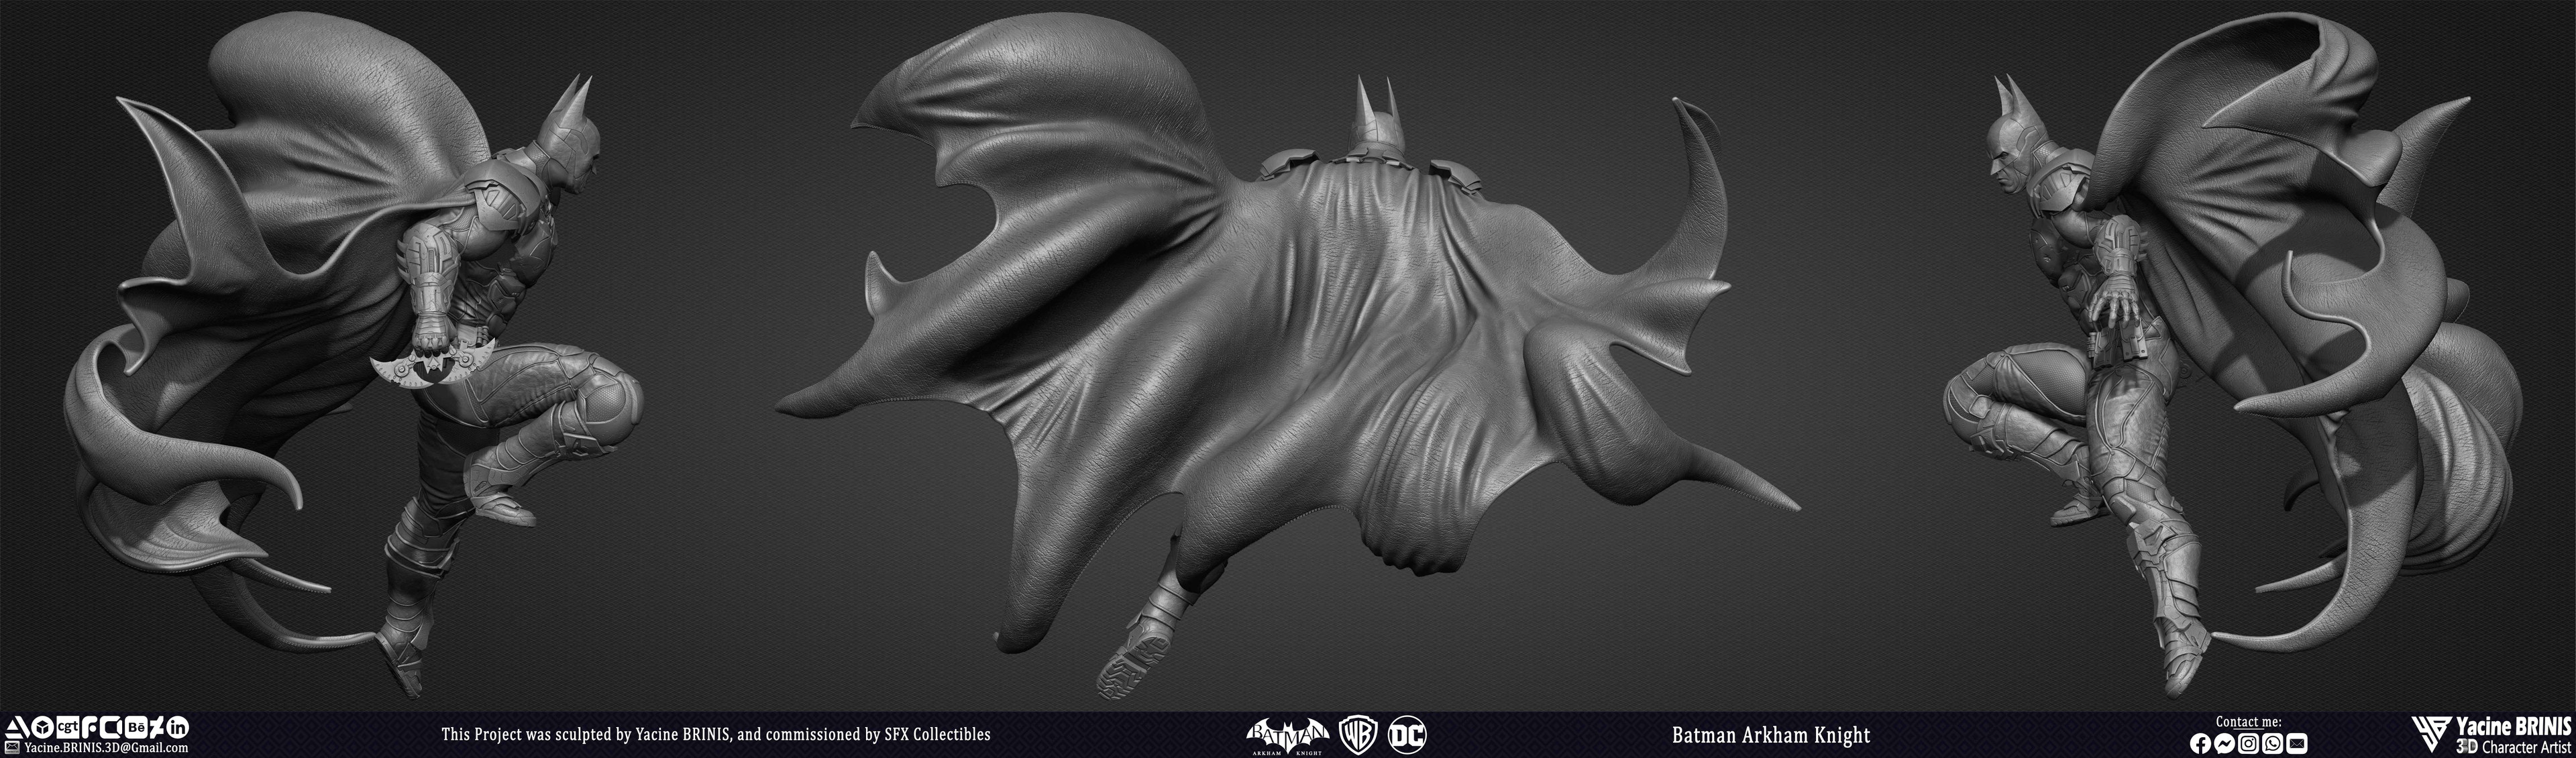 Batman Arkham Knight Vol 03 Sculpted by Yacine BRINIS 006